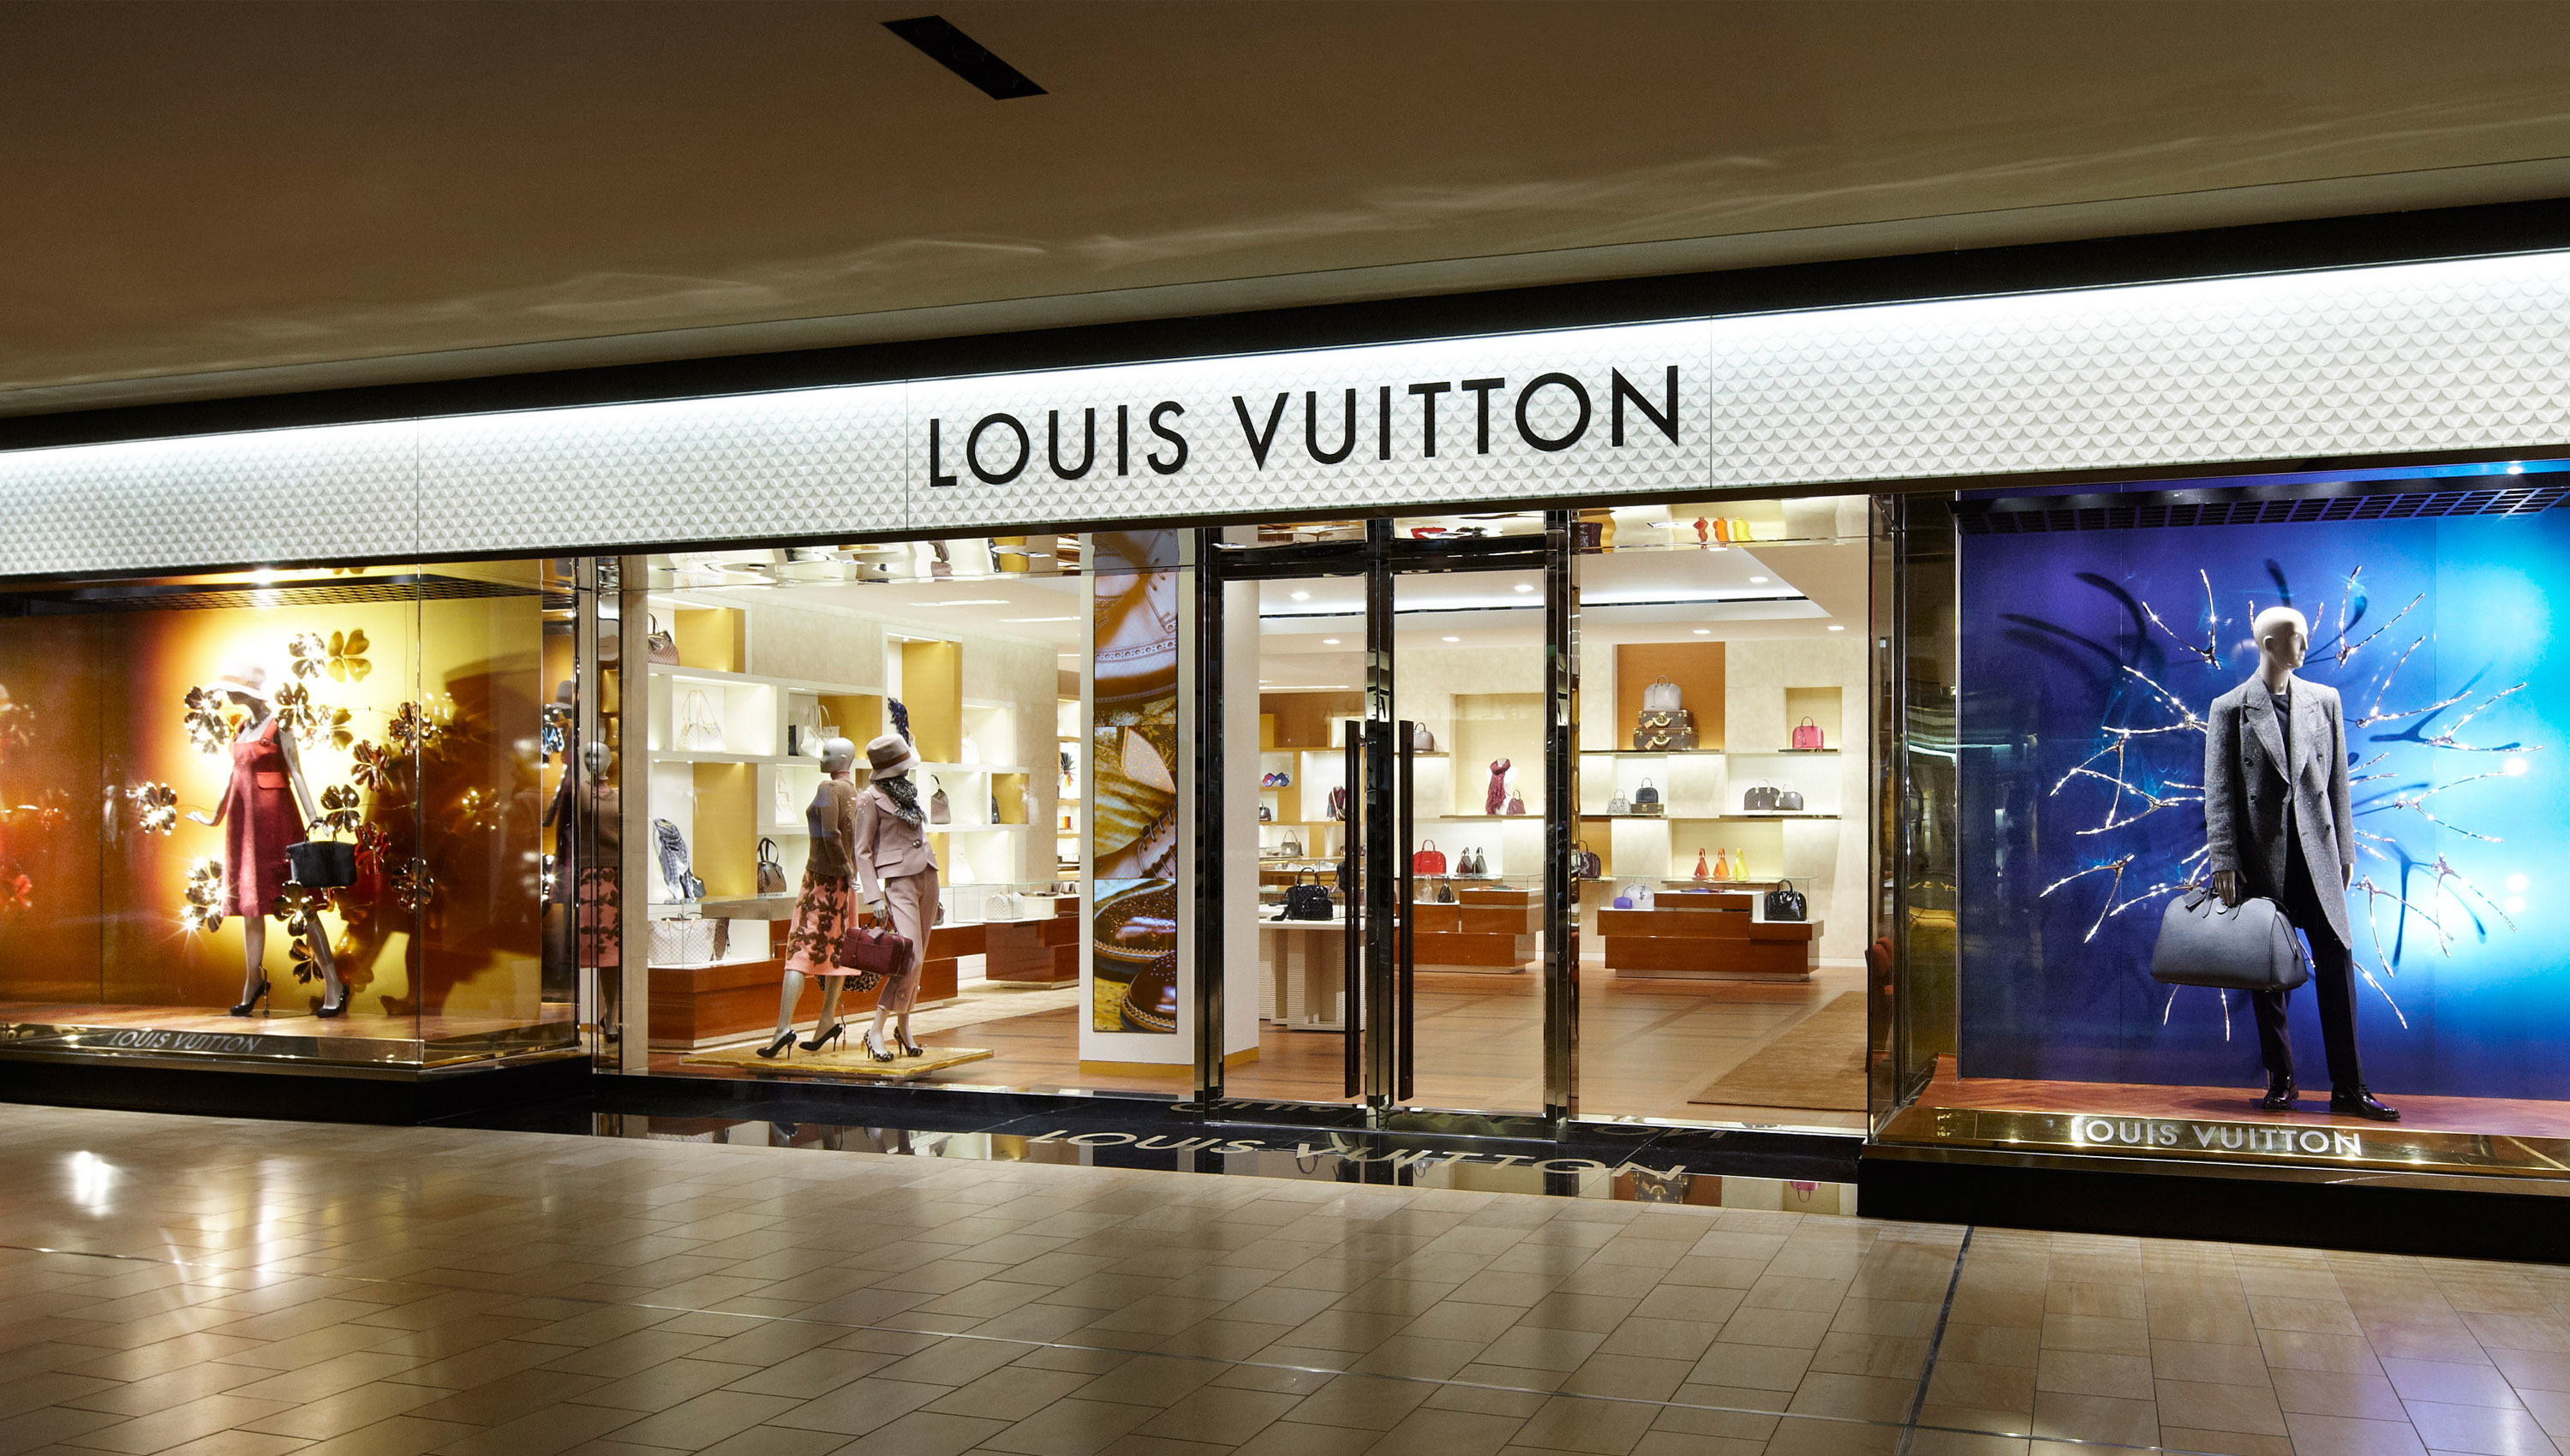 Louis Vuitton Houston Galleria, Houston Texas (TX) - 0